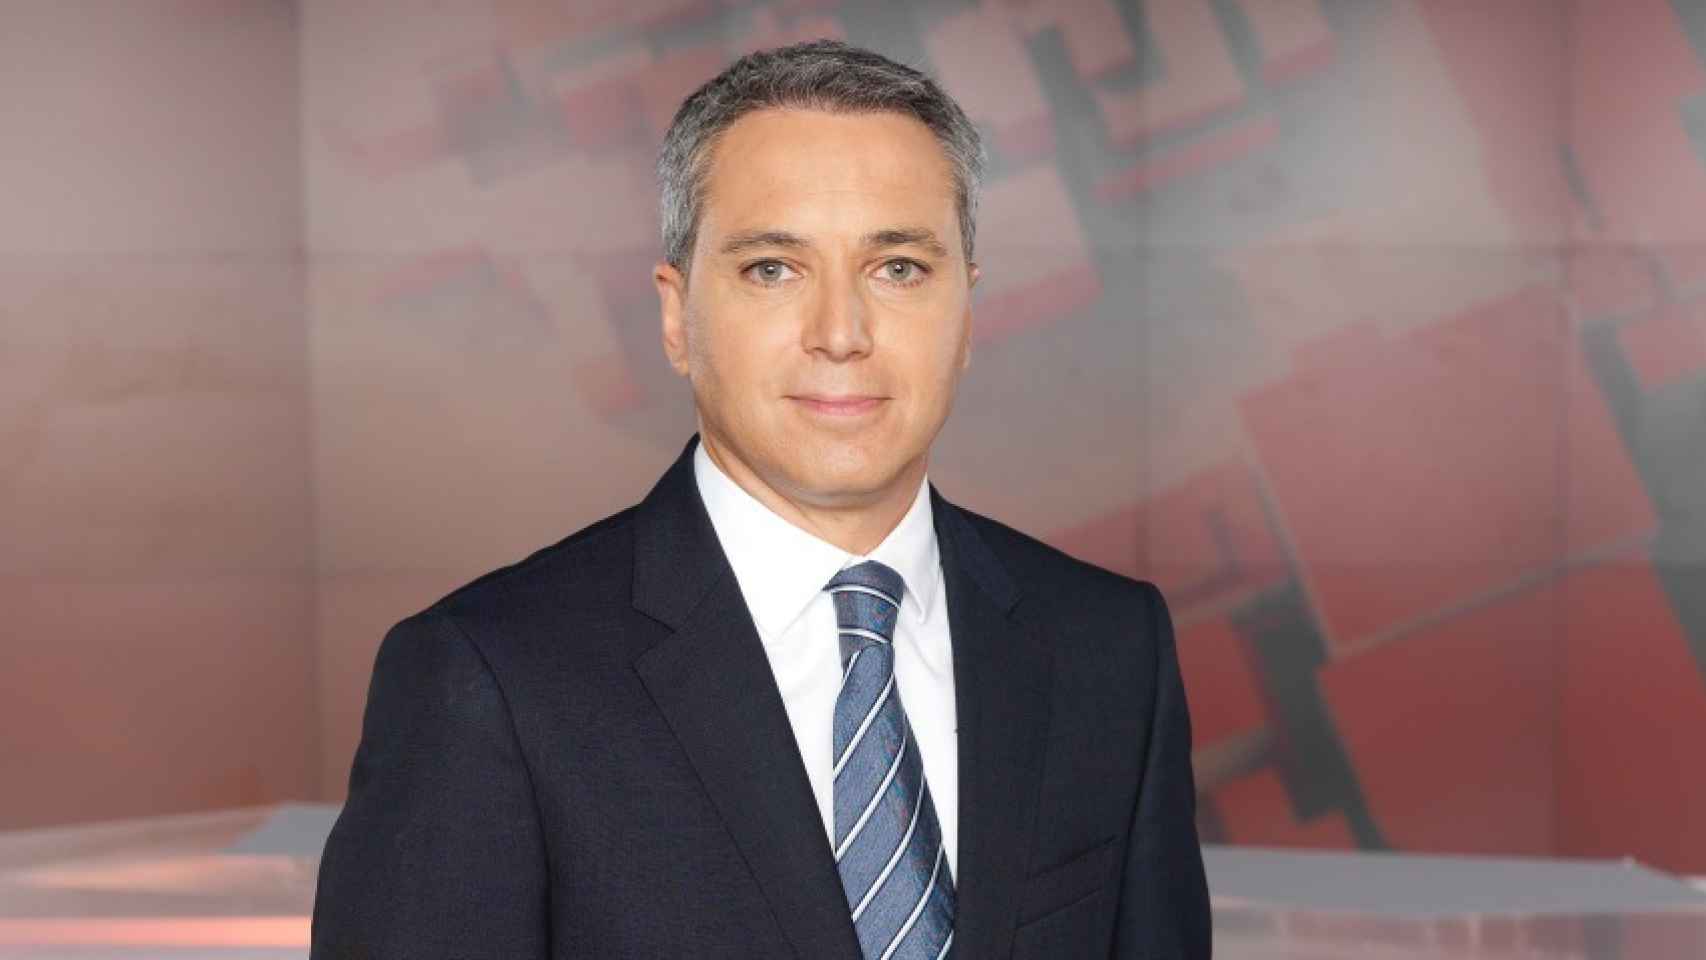 Vicente Vallés en una imagen promocional de Antena 3.